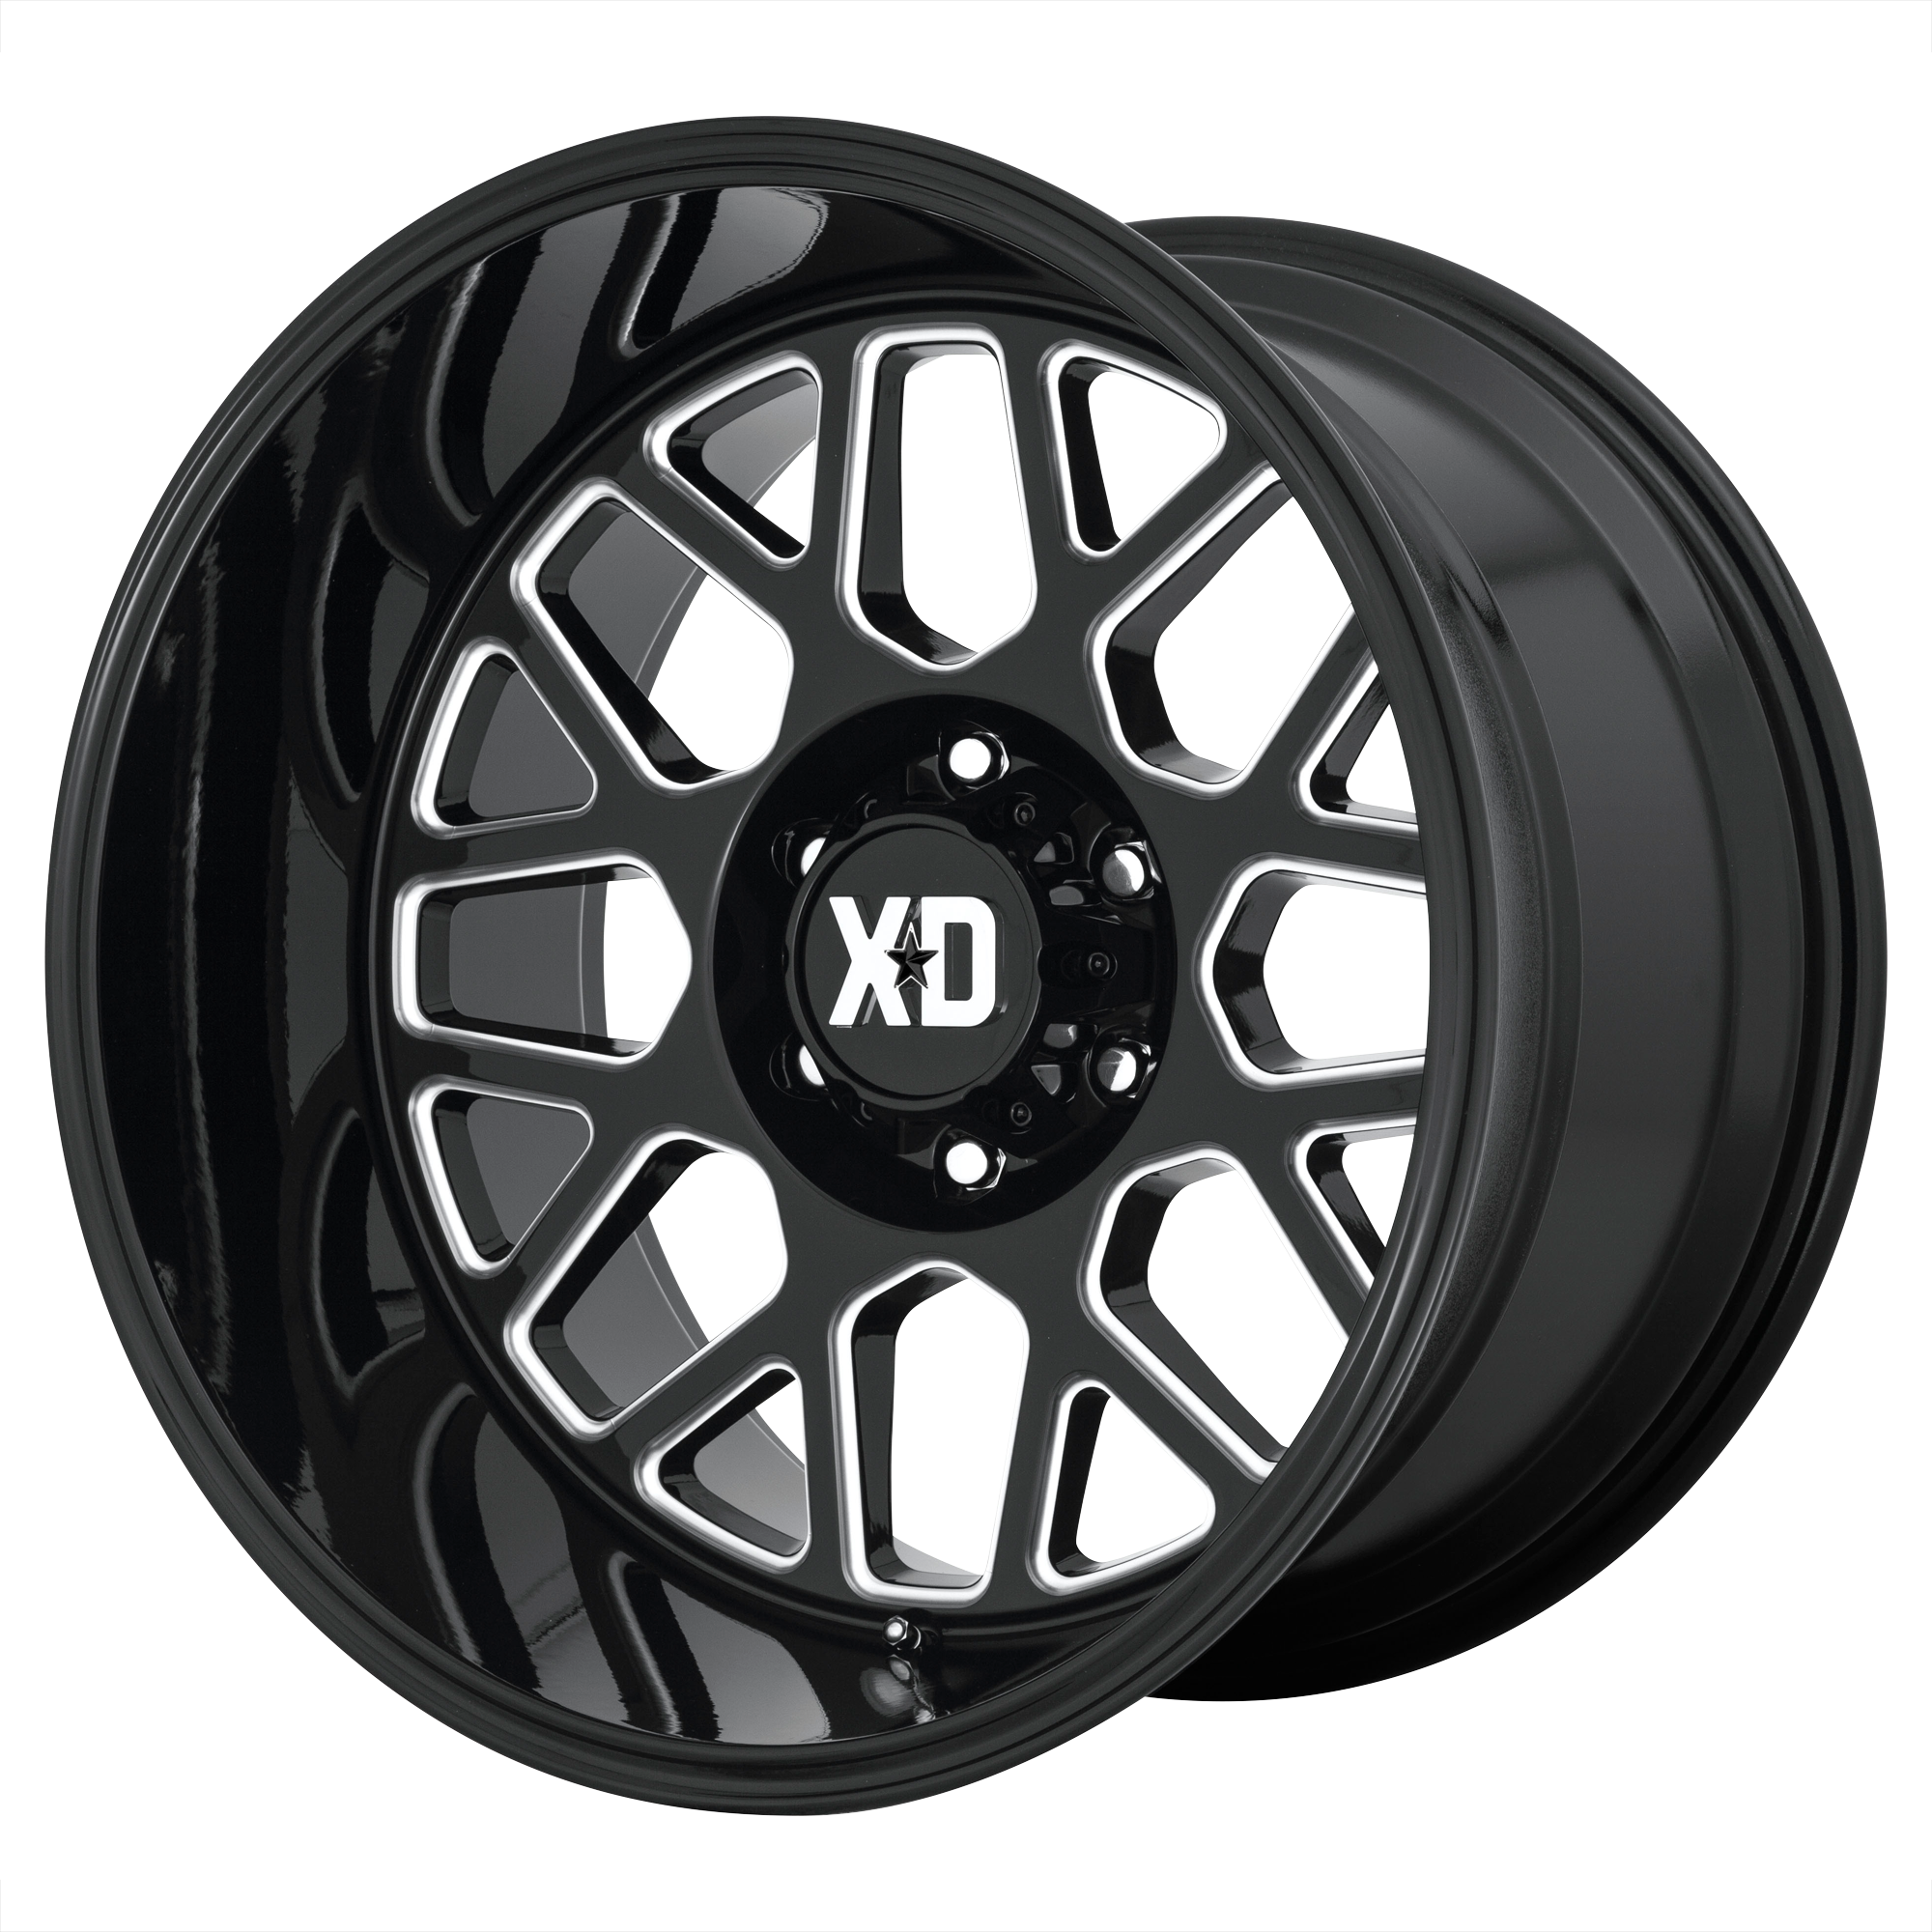 XD Series XD849 GRENADE 2 Gloss Black Milled